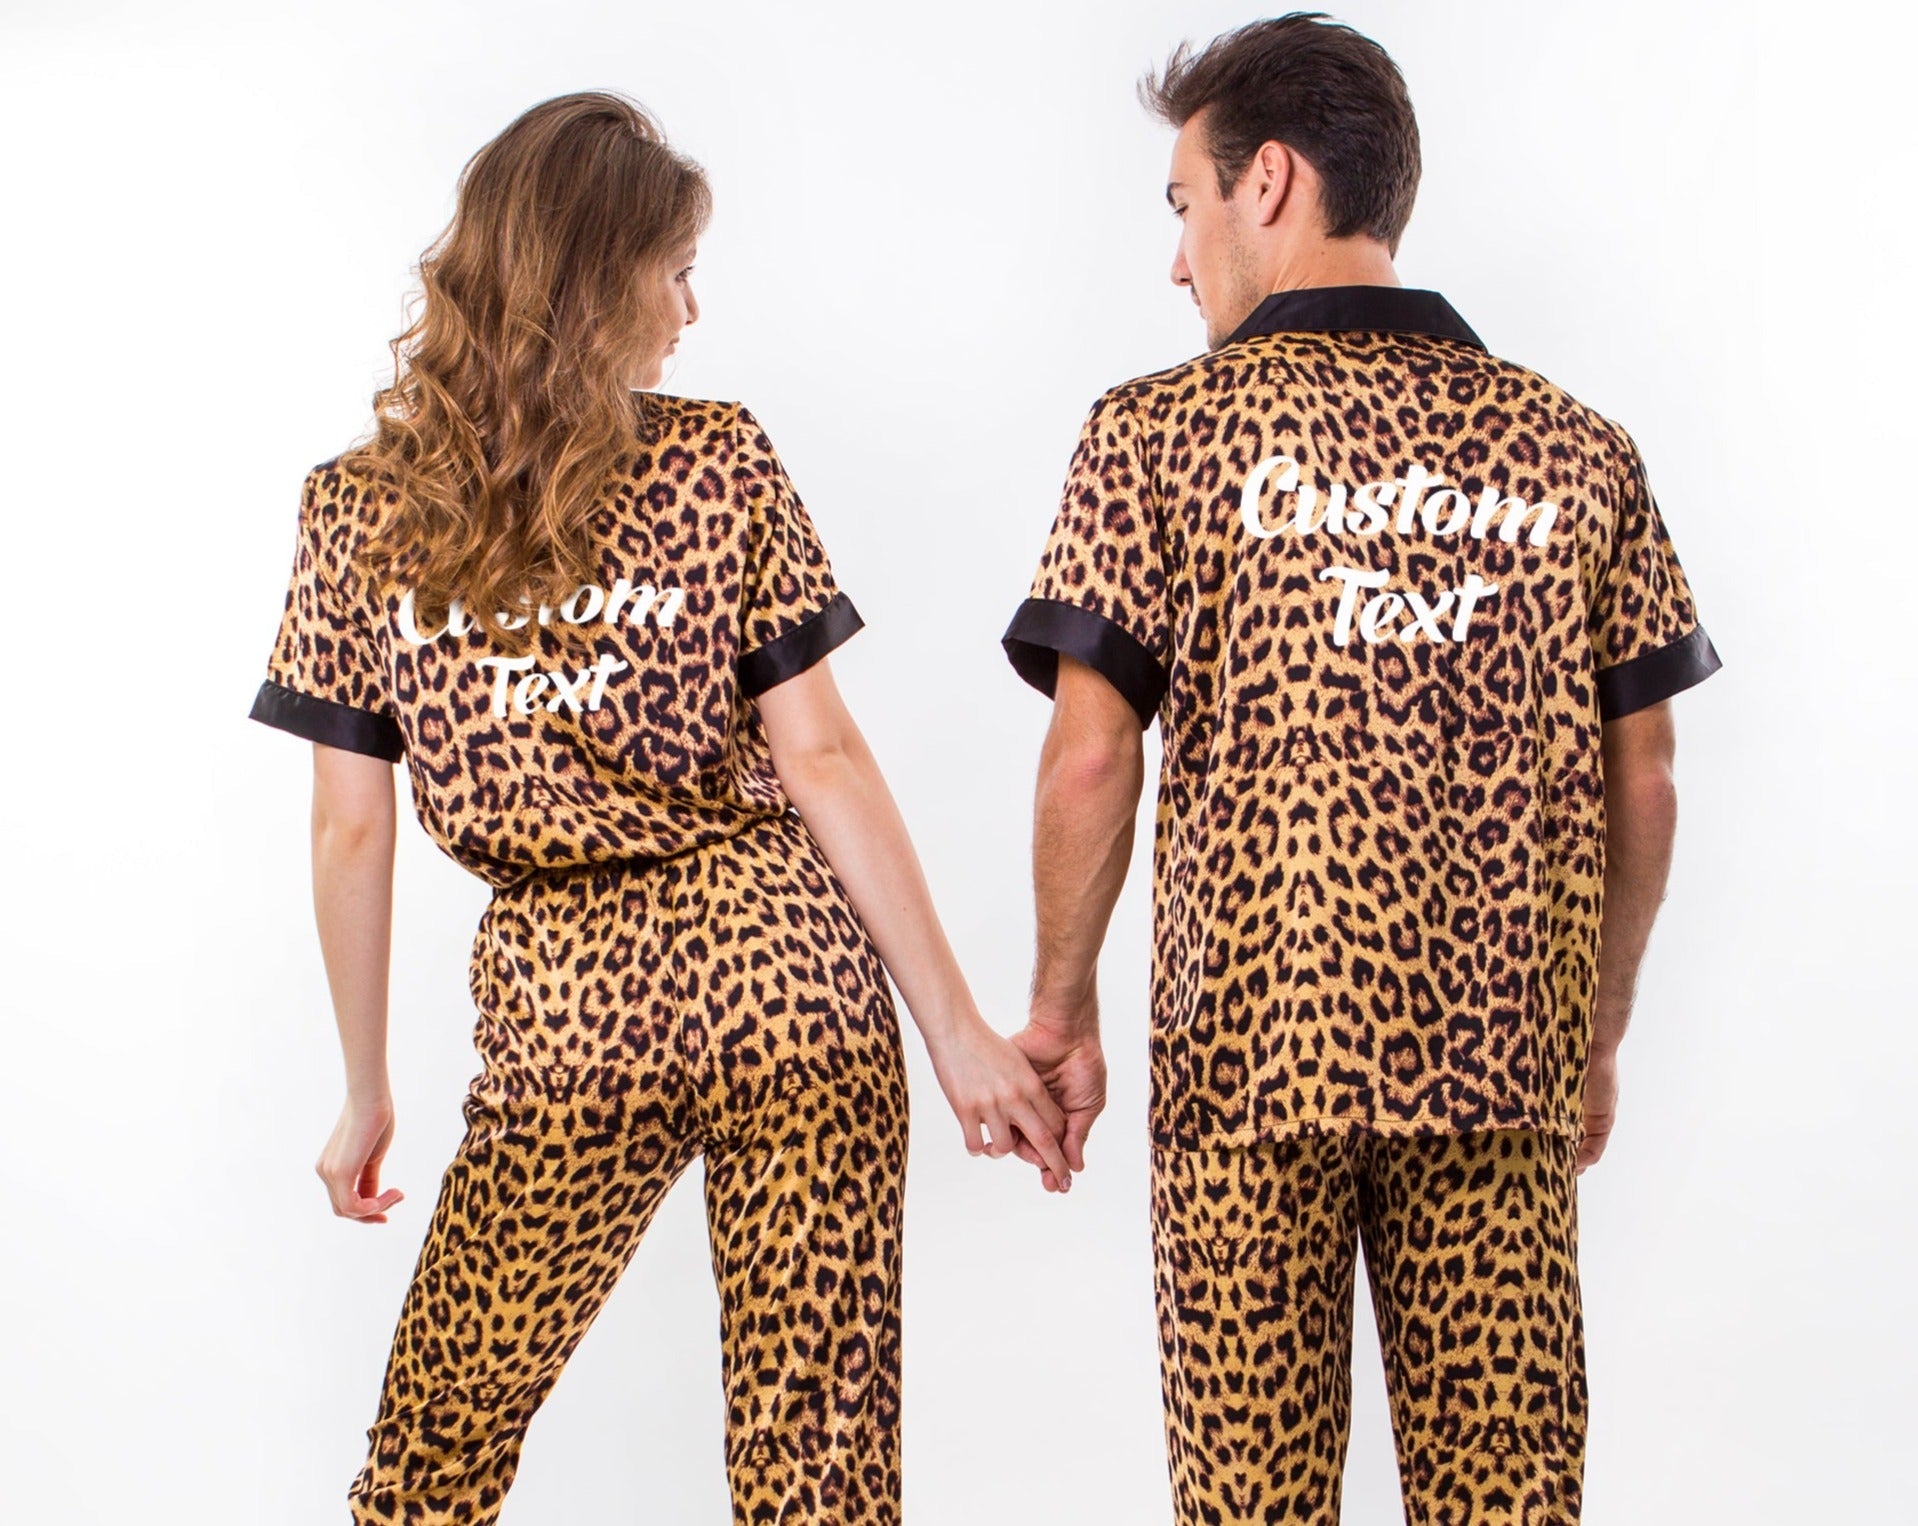 Set Anniversary Pjs, Xmas Pajamas – Miami Pajamas Gifts gift Sunny Honeymoon for Pajamas Wedding Custom Boutique Leopard Satin Gift, Couple,